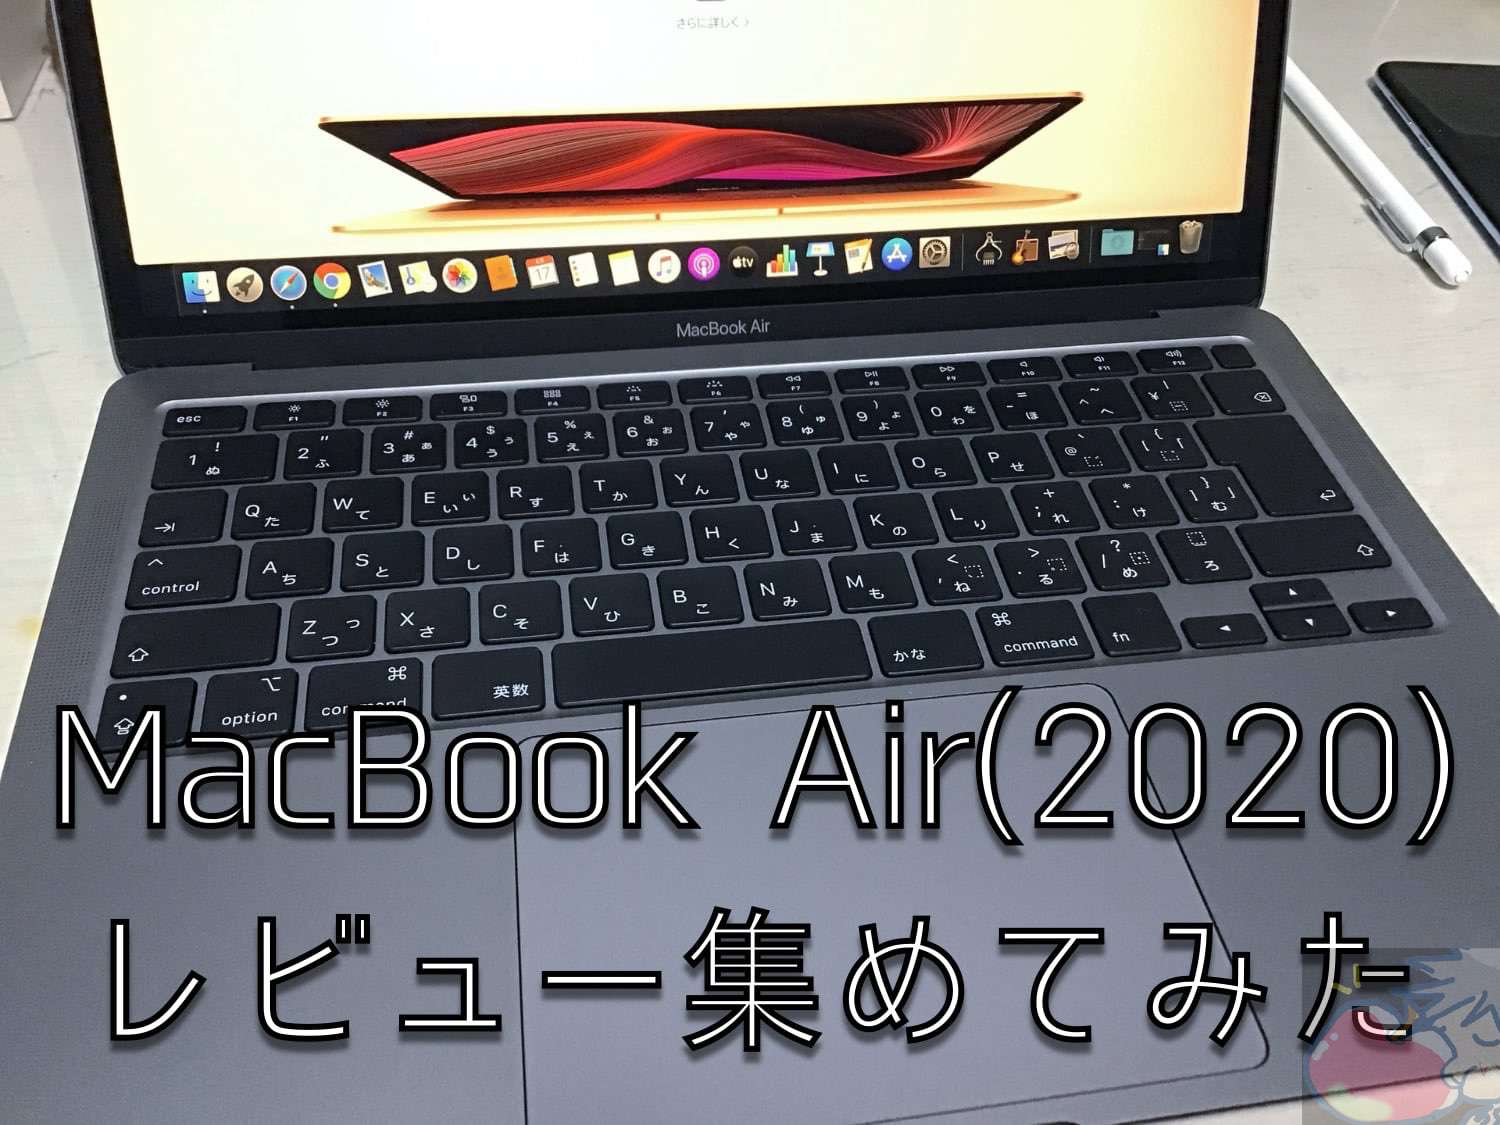 MacBook Air(2020)のレビューを13名分集めてわかった115のこと